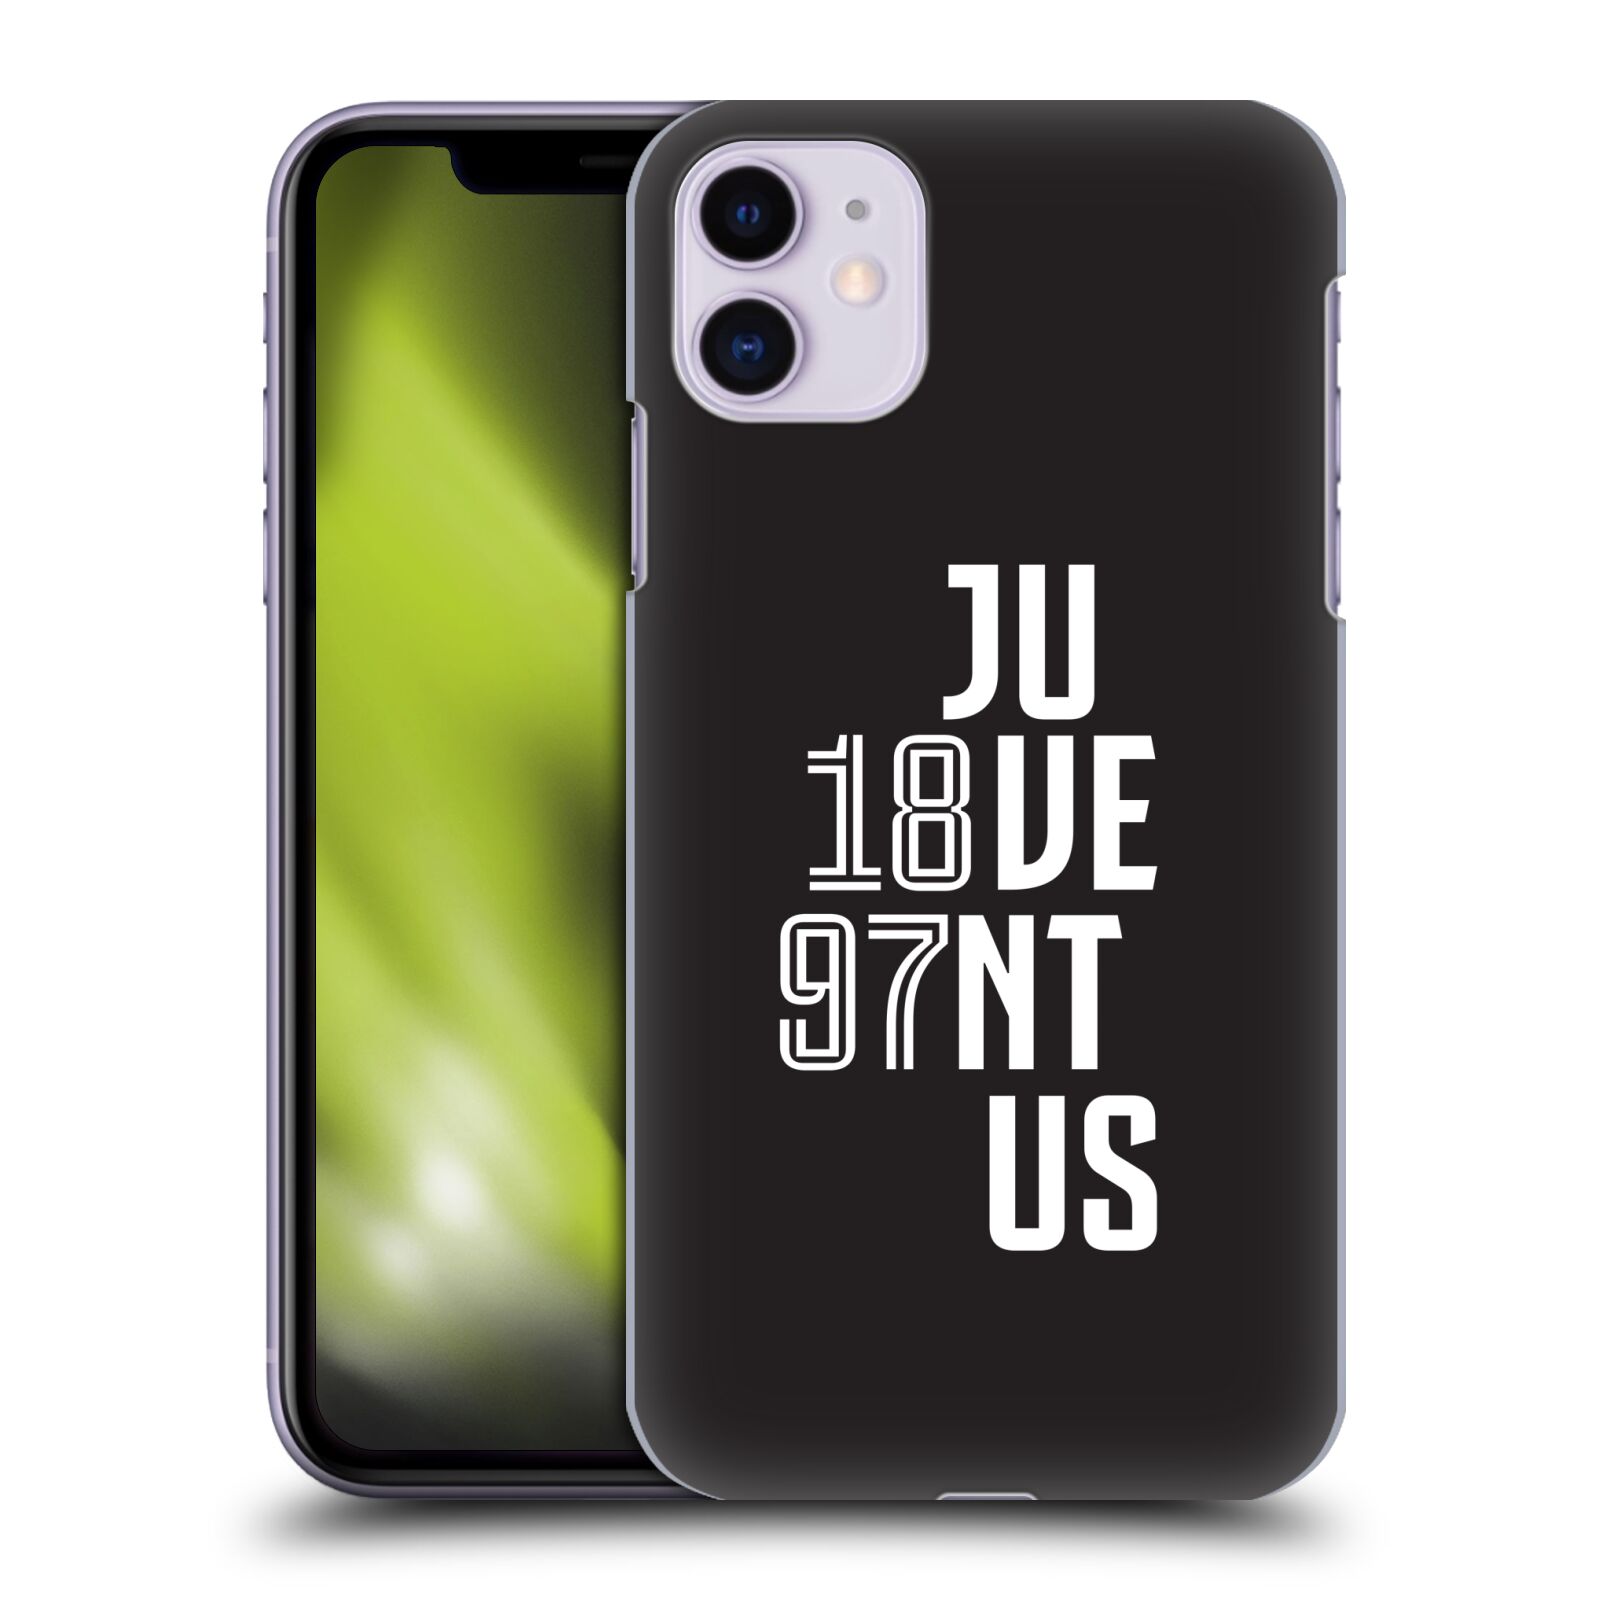 Zadní obal pro mobil Apple Iphone 11 - HEAD CASE - Fotbalový klub Juventus - Velké písmo